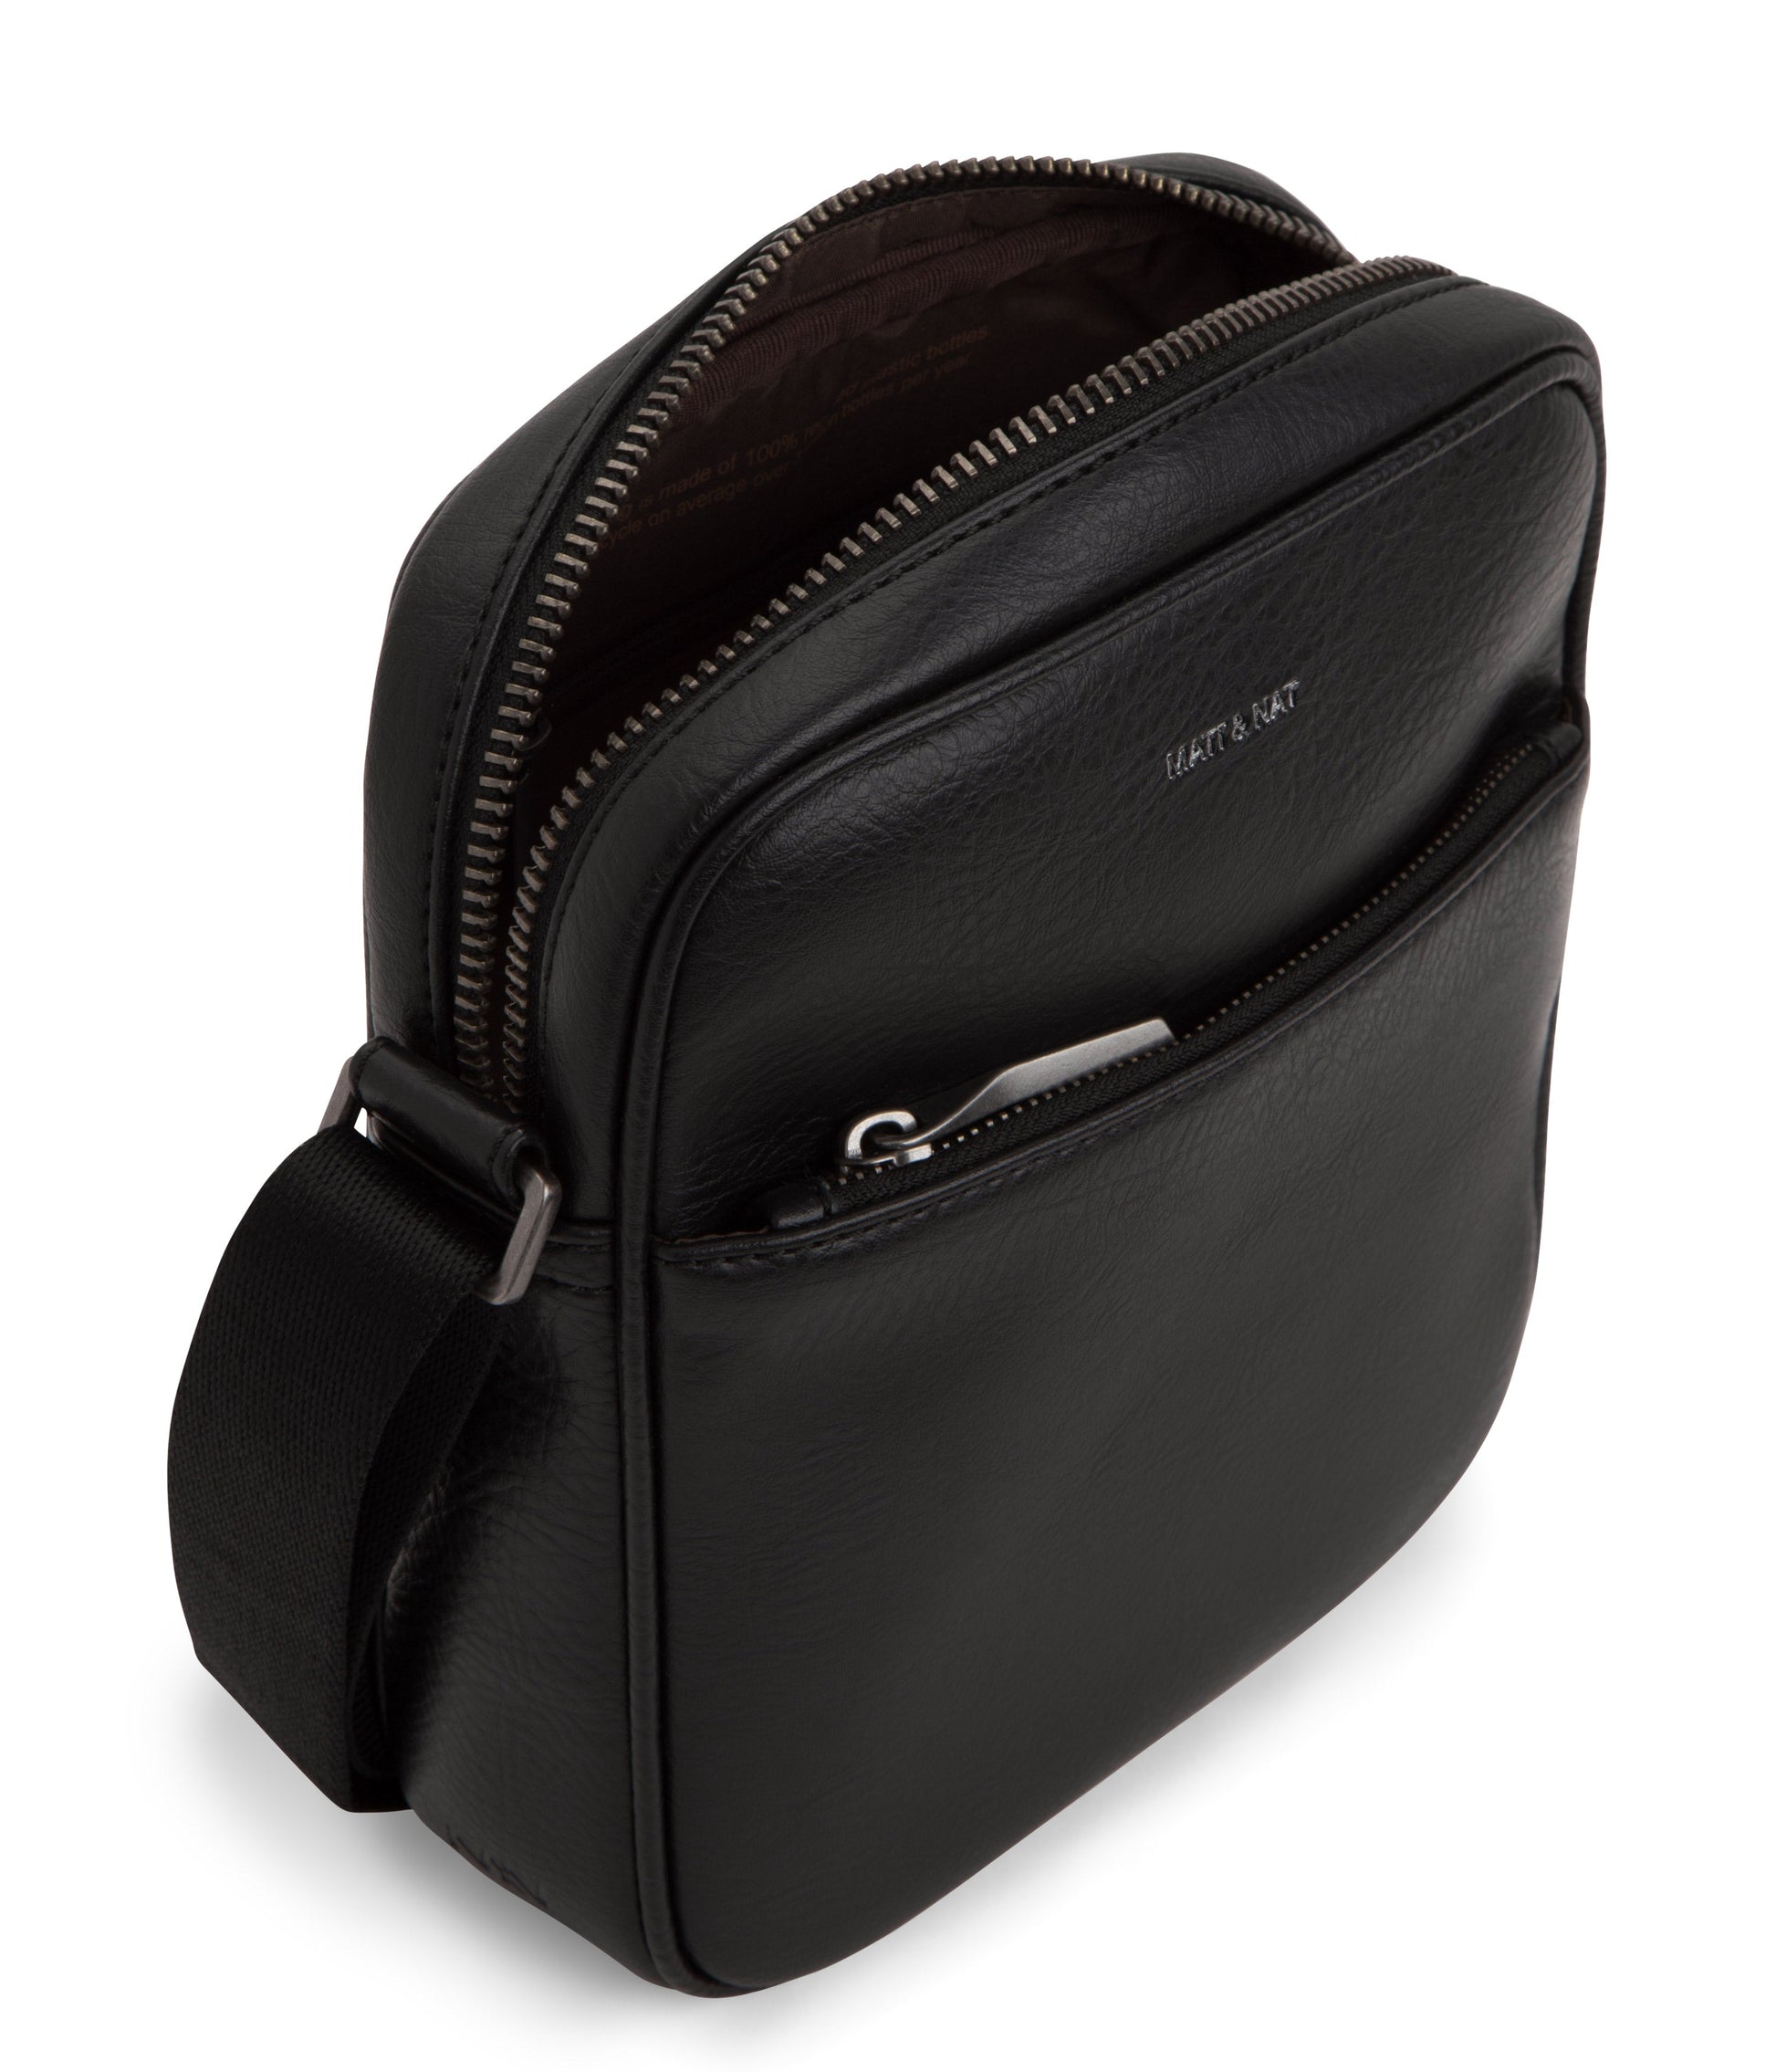 MODERN Vegan Leather Handbag With Shoulder Strap – VEGIA Bags